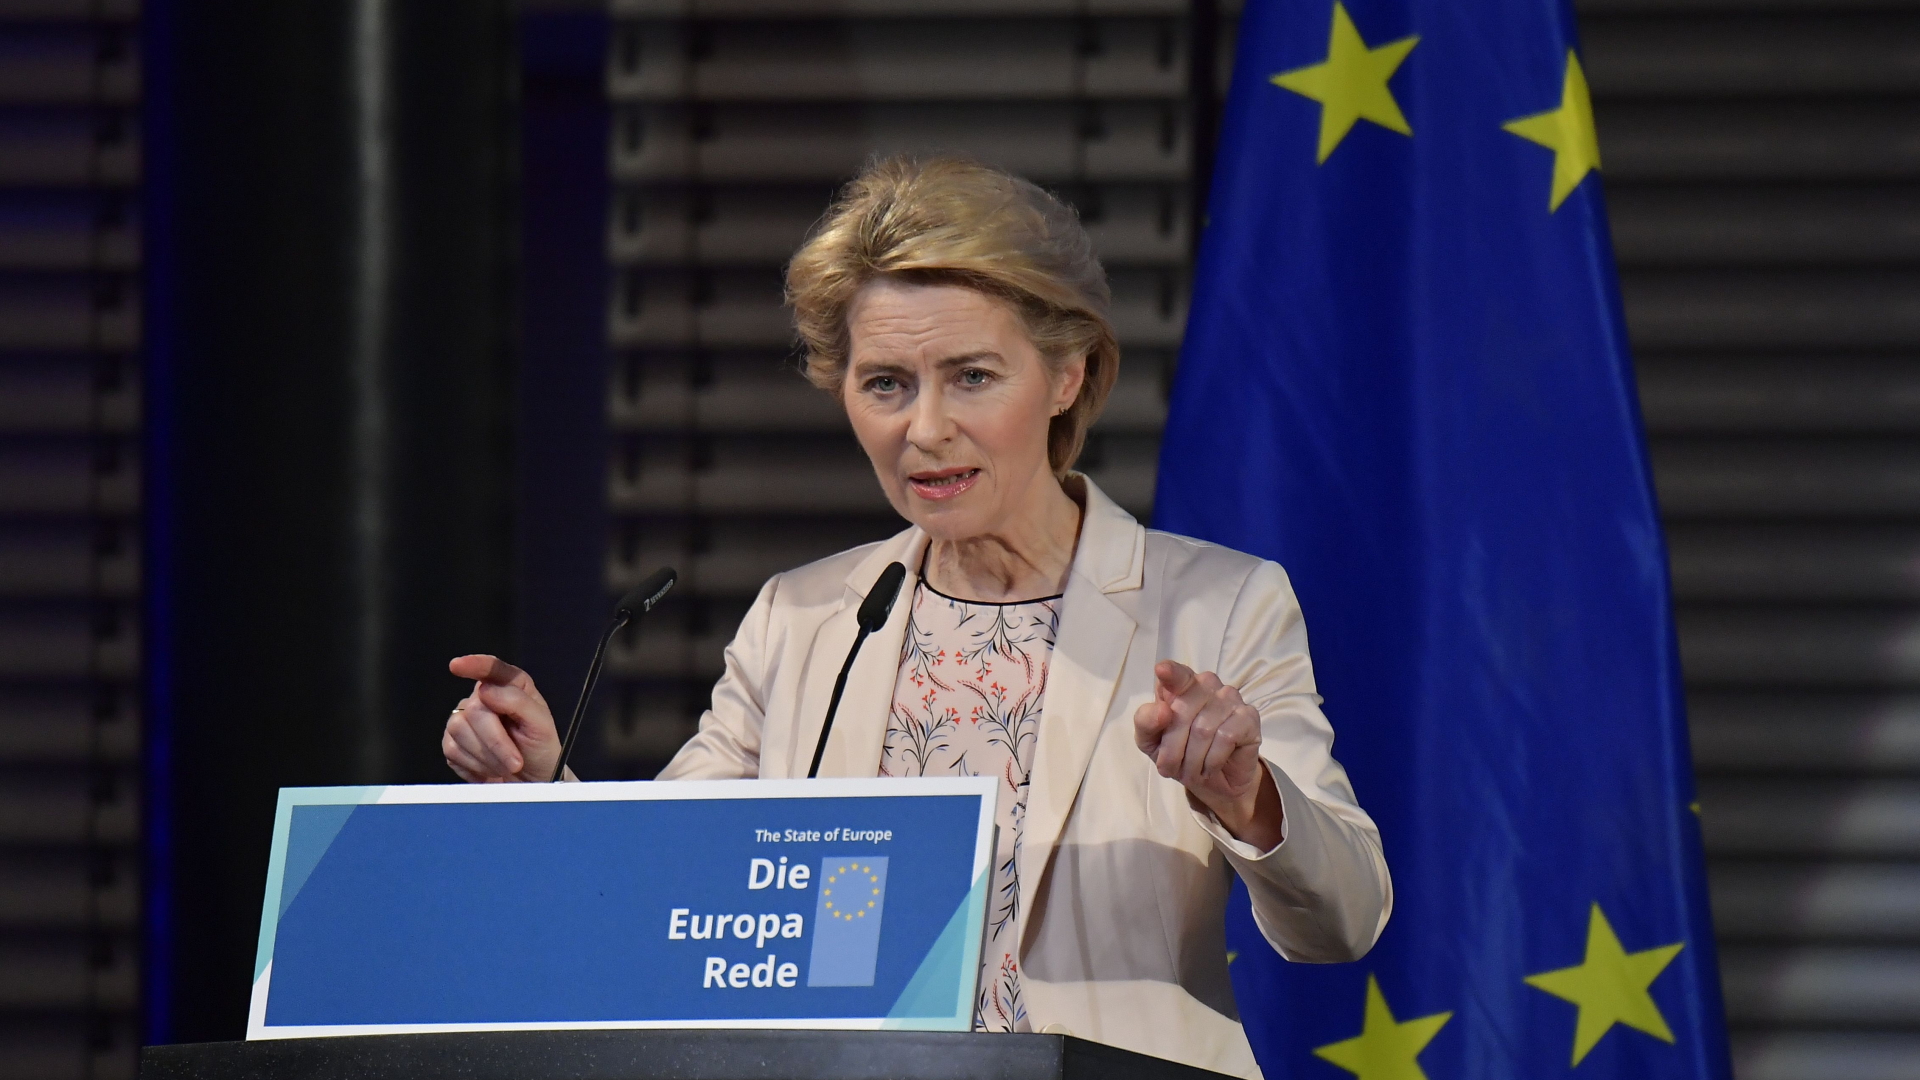 Die künftige Präsidentin der Europäischen Kommission, Ursula von der Leyen, bei einer Veranstaltung der Konrad-Adenauer-Stiftung zum Thema "Europa". | AFP